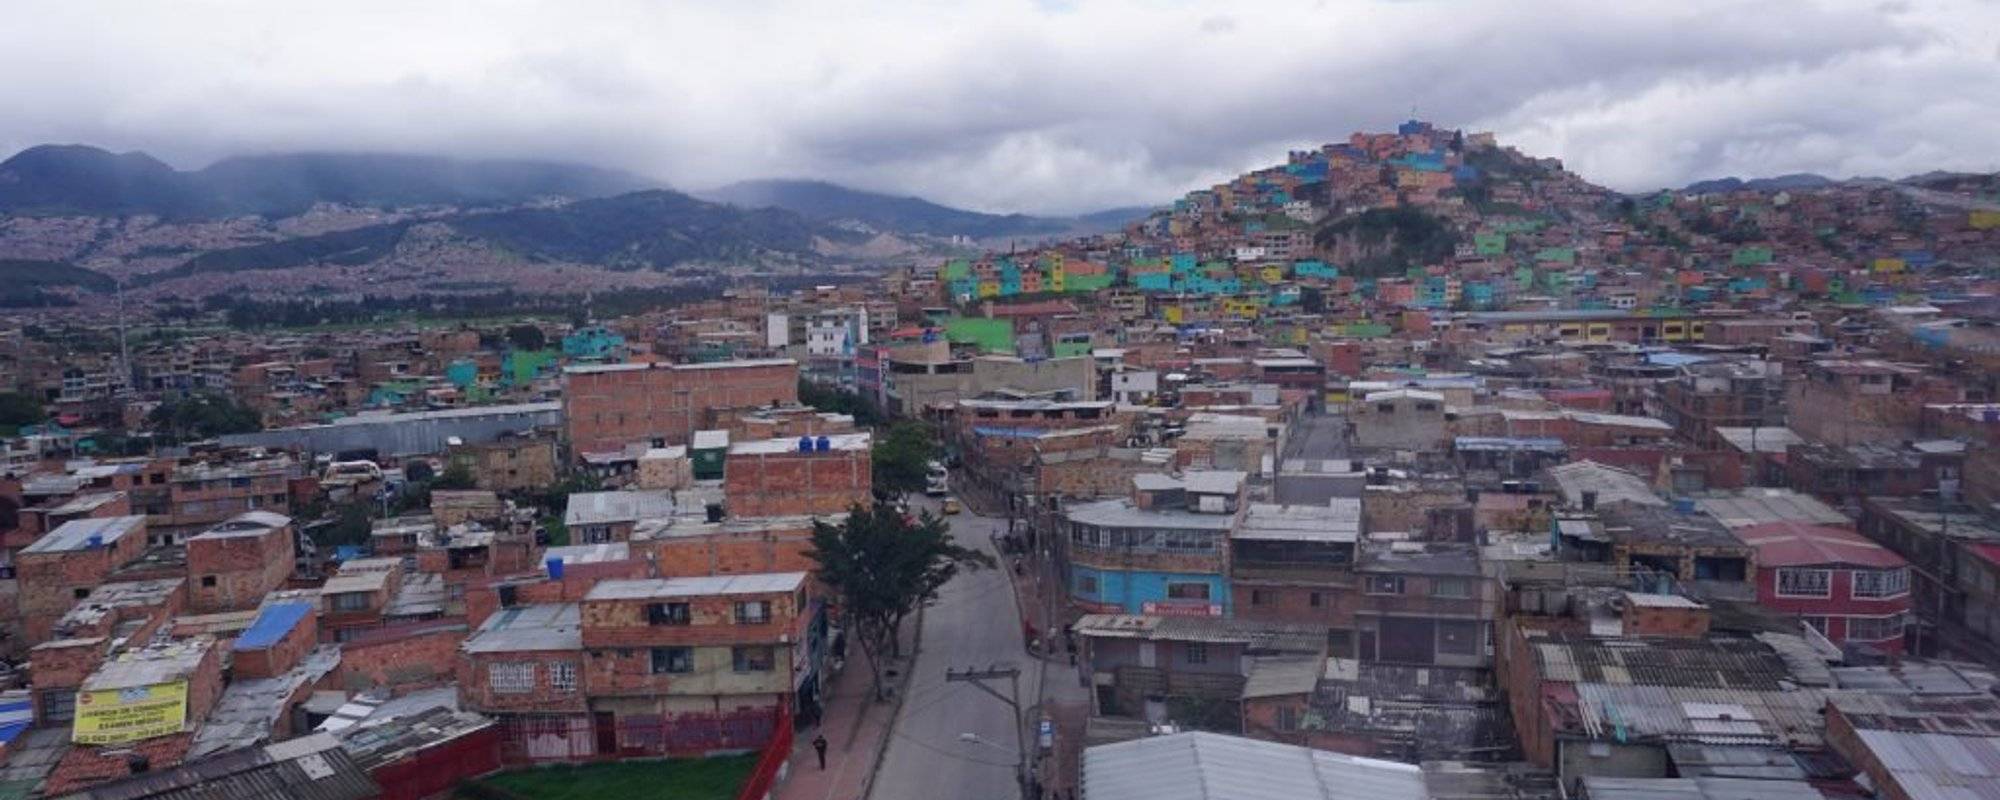 Is Bogotá dangerous? No it's beautiful!